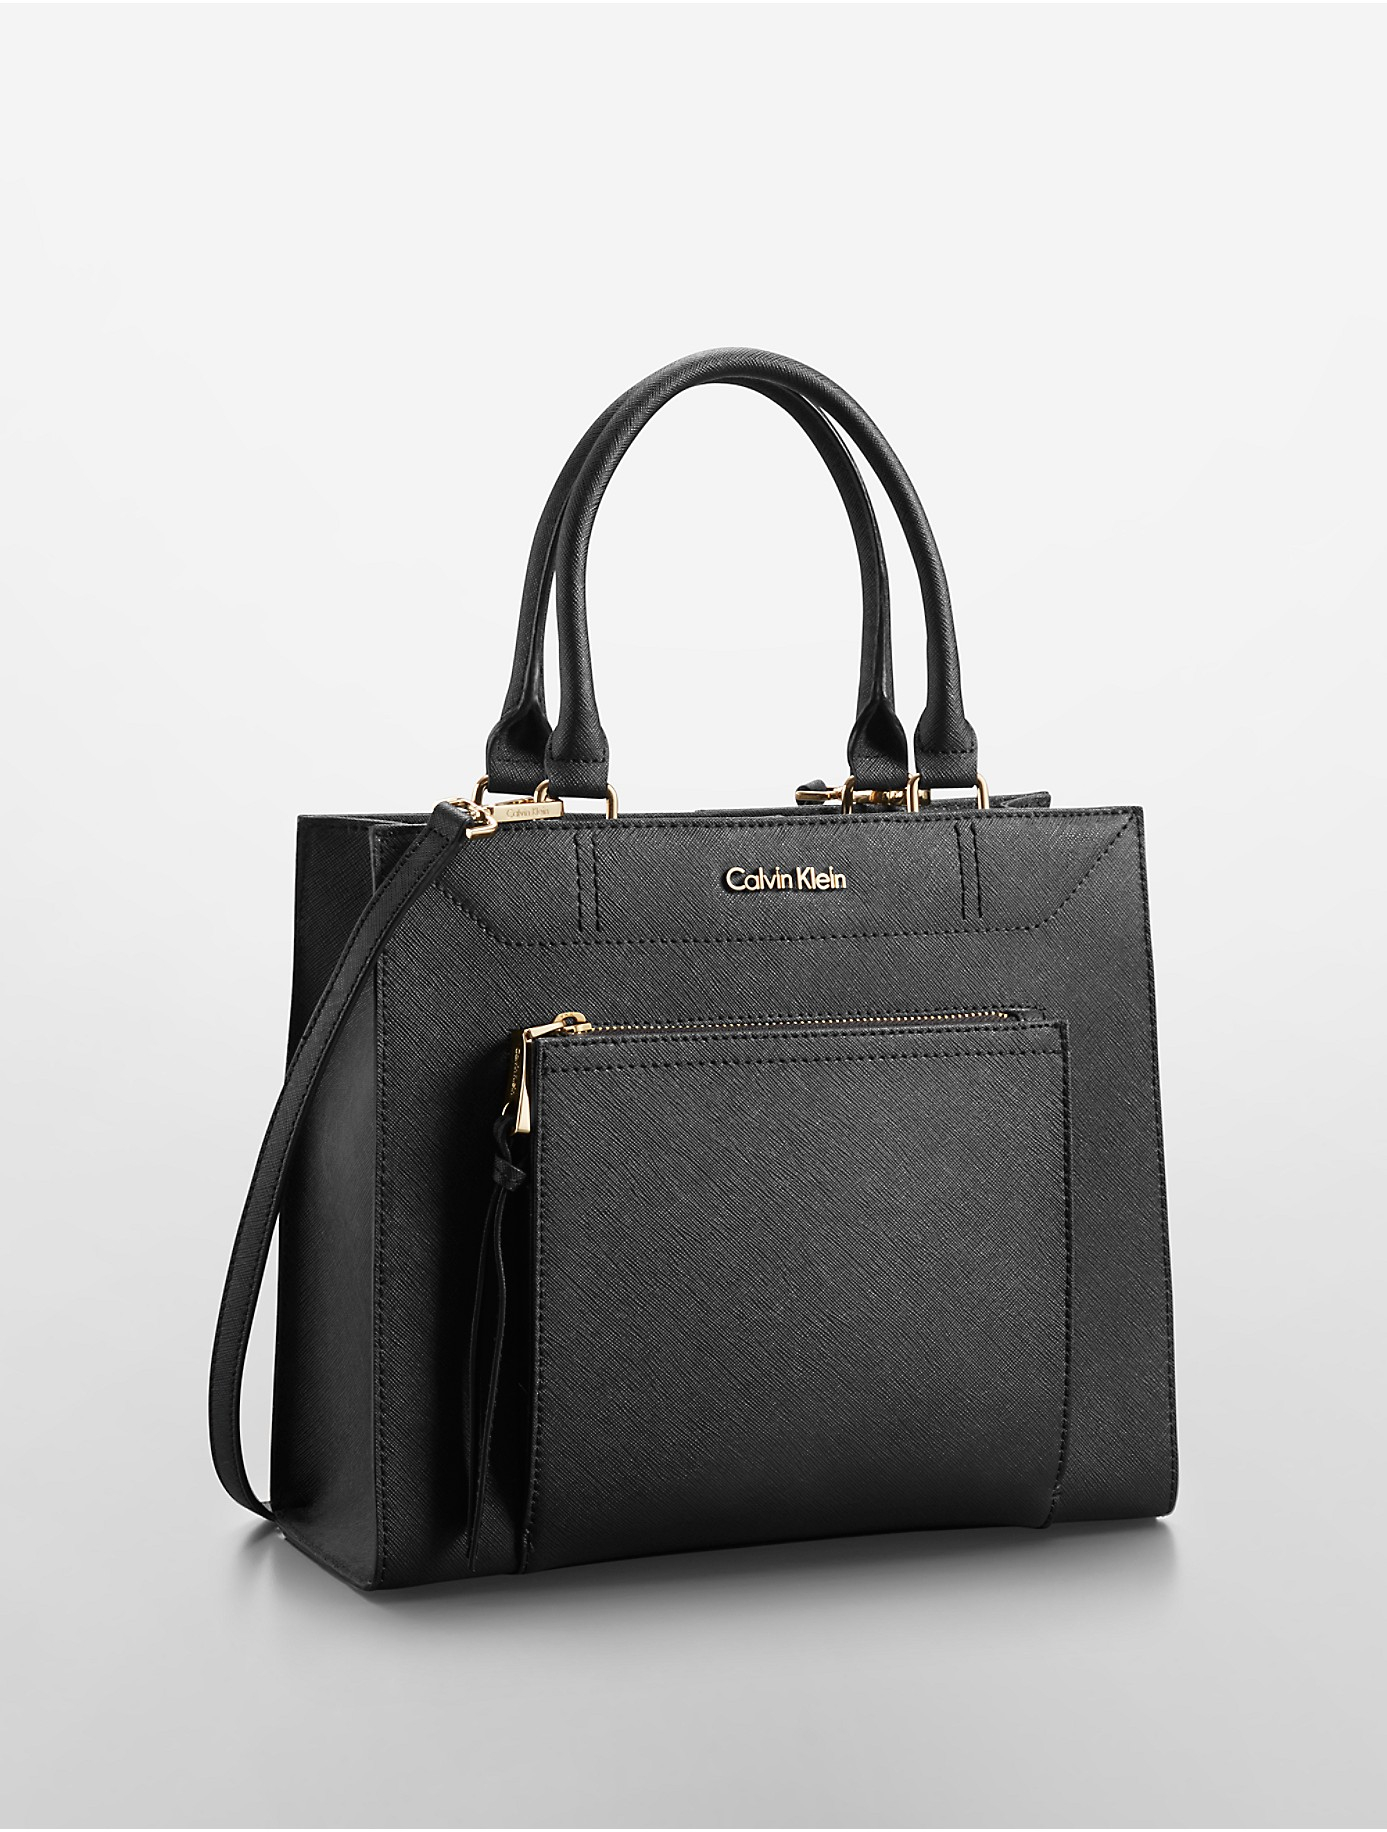 Lyst - Calvin Klein Saffiano Leather Small Tote Bag in Black